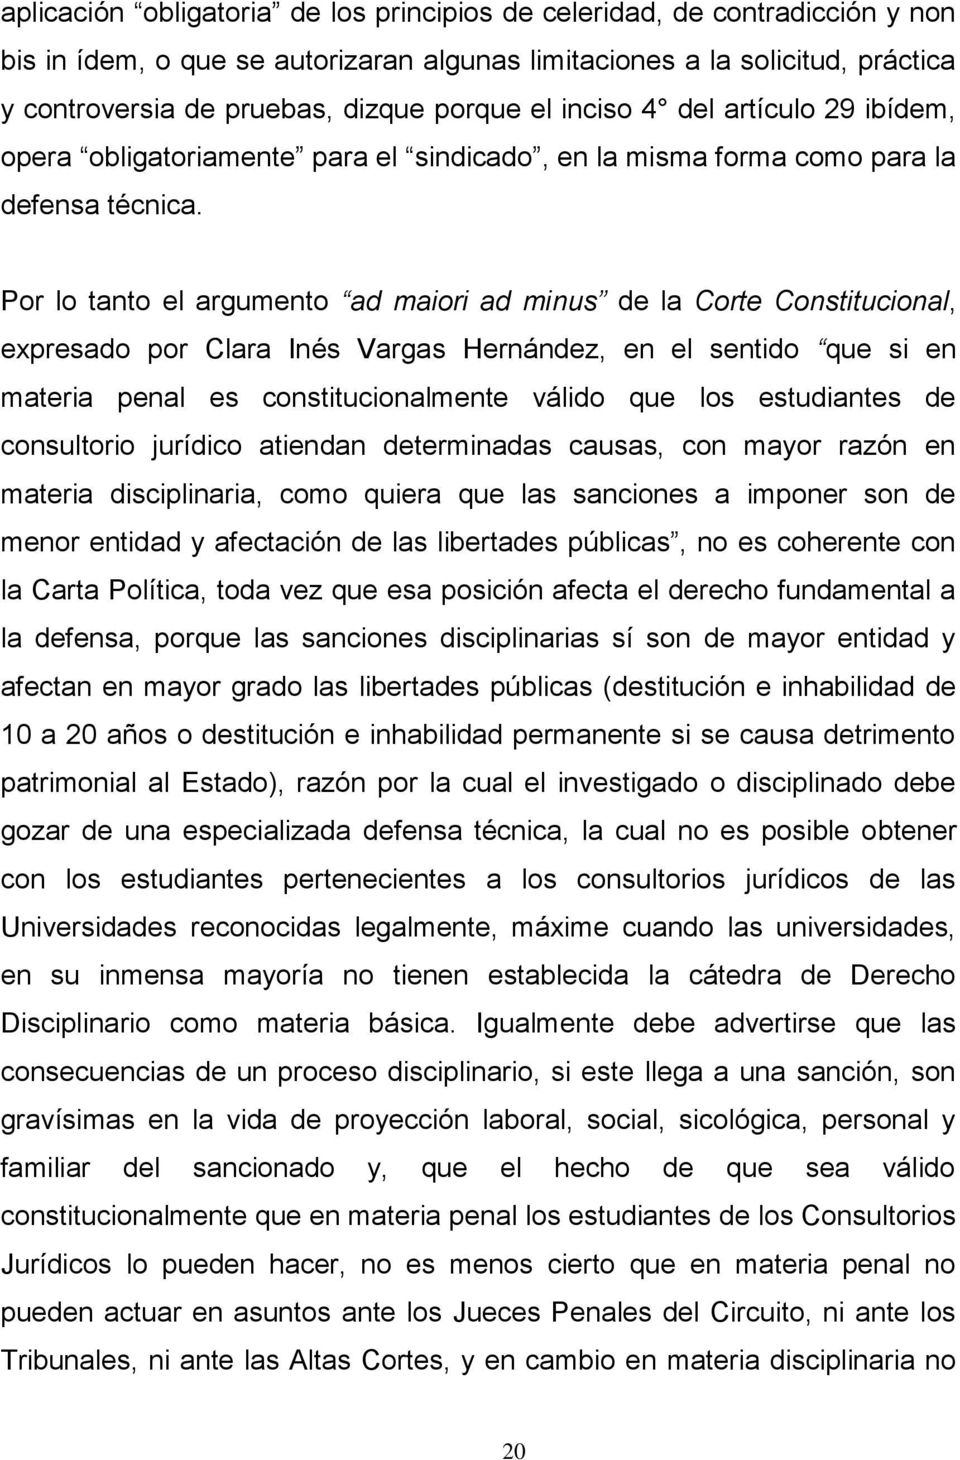 Por lo tanto el argumento ad maiori ad minus de la Corte Constitucional, expresado por Clara Inés Vargas Hernández, en el sentido que si en materia penal es constitucionalmente válido que los